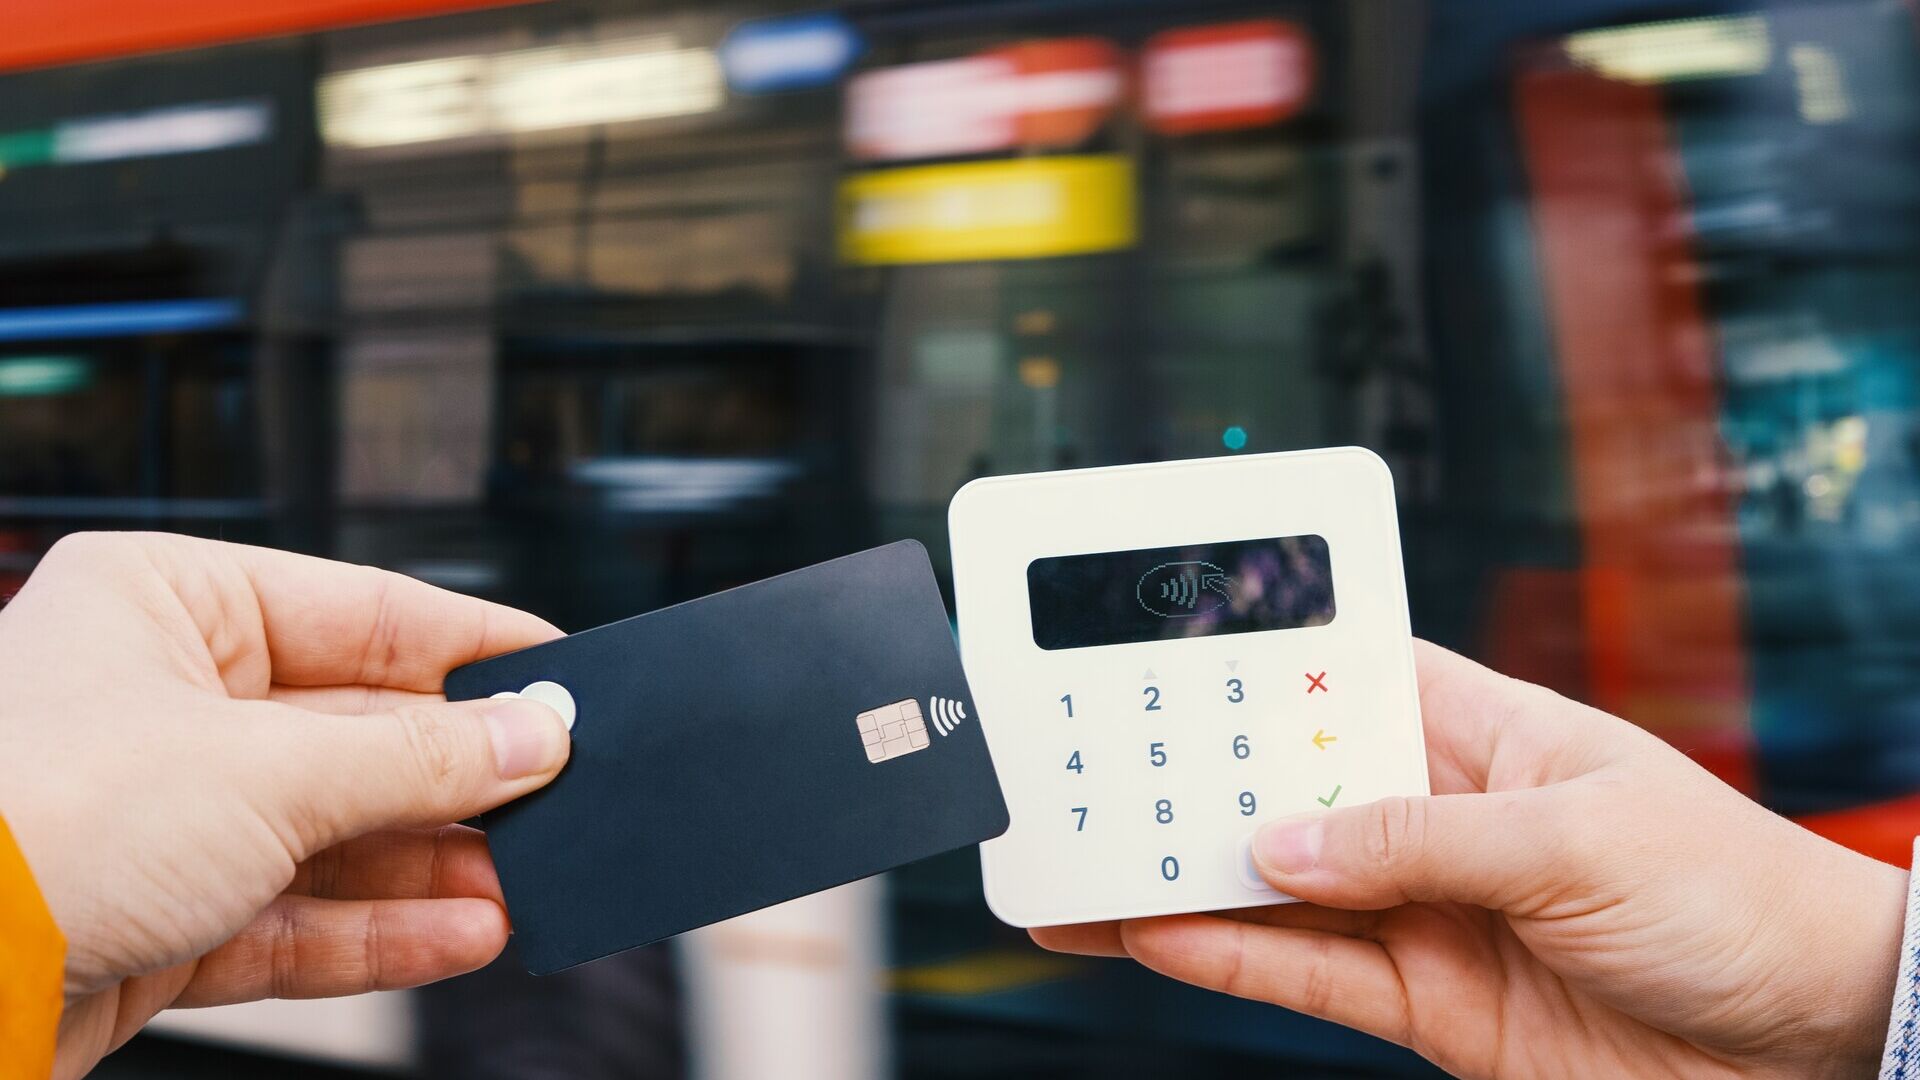 Mokėjimai mobiliesiems: mažos įmonės dažnai leidžia atsiskaityti kortele arba skaitmeniniais mokėjimais už dideles sumas, nes kitu atveju jų operacijos išlaidos būtų didesnės